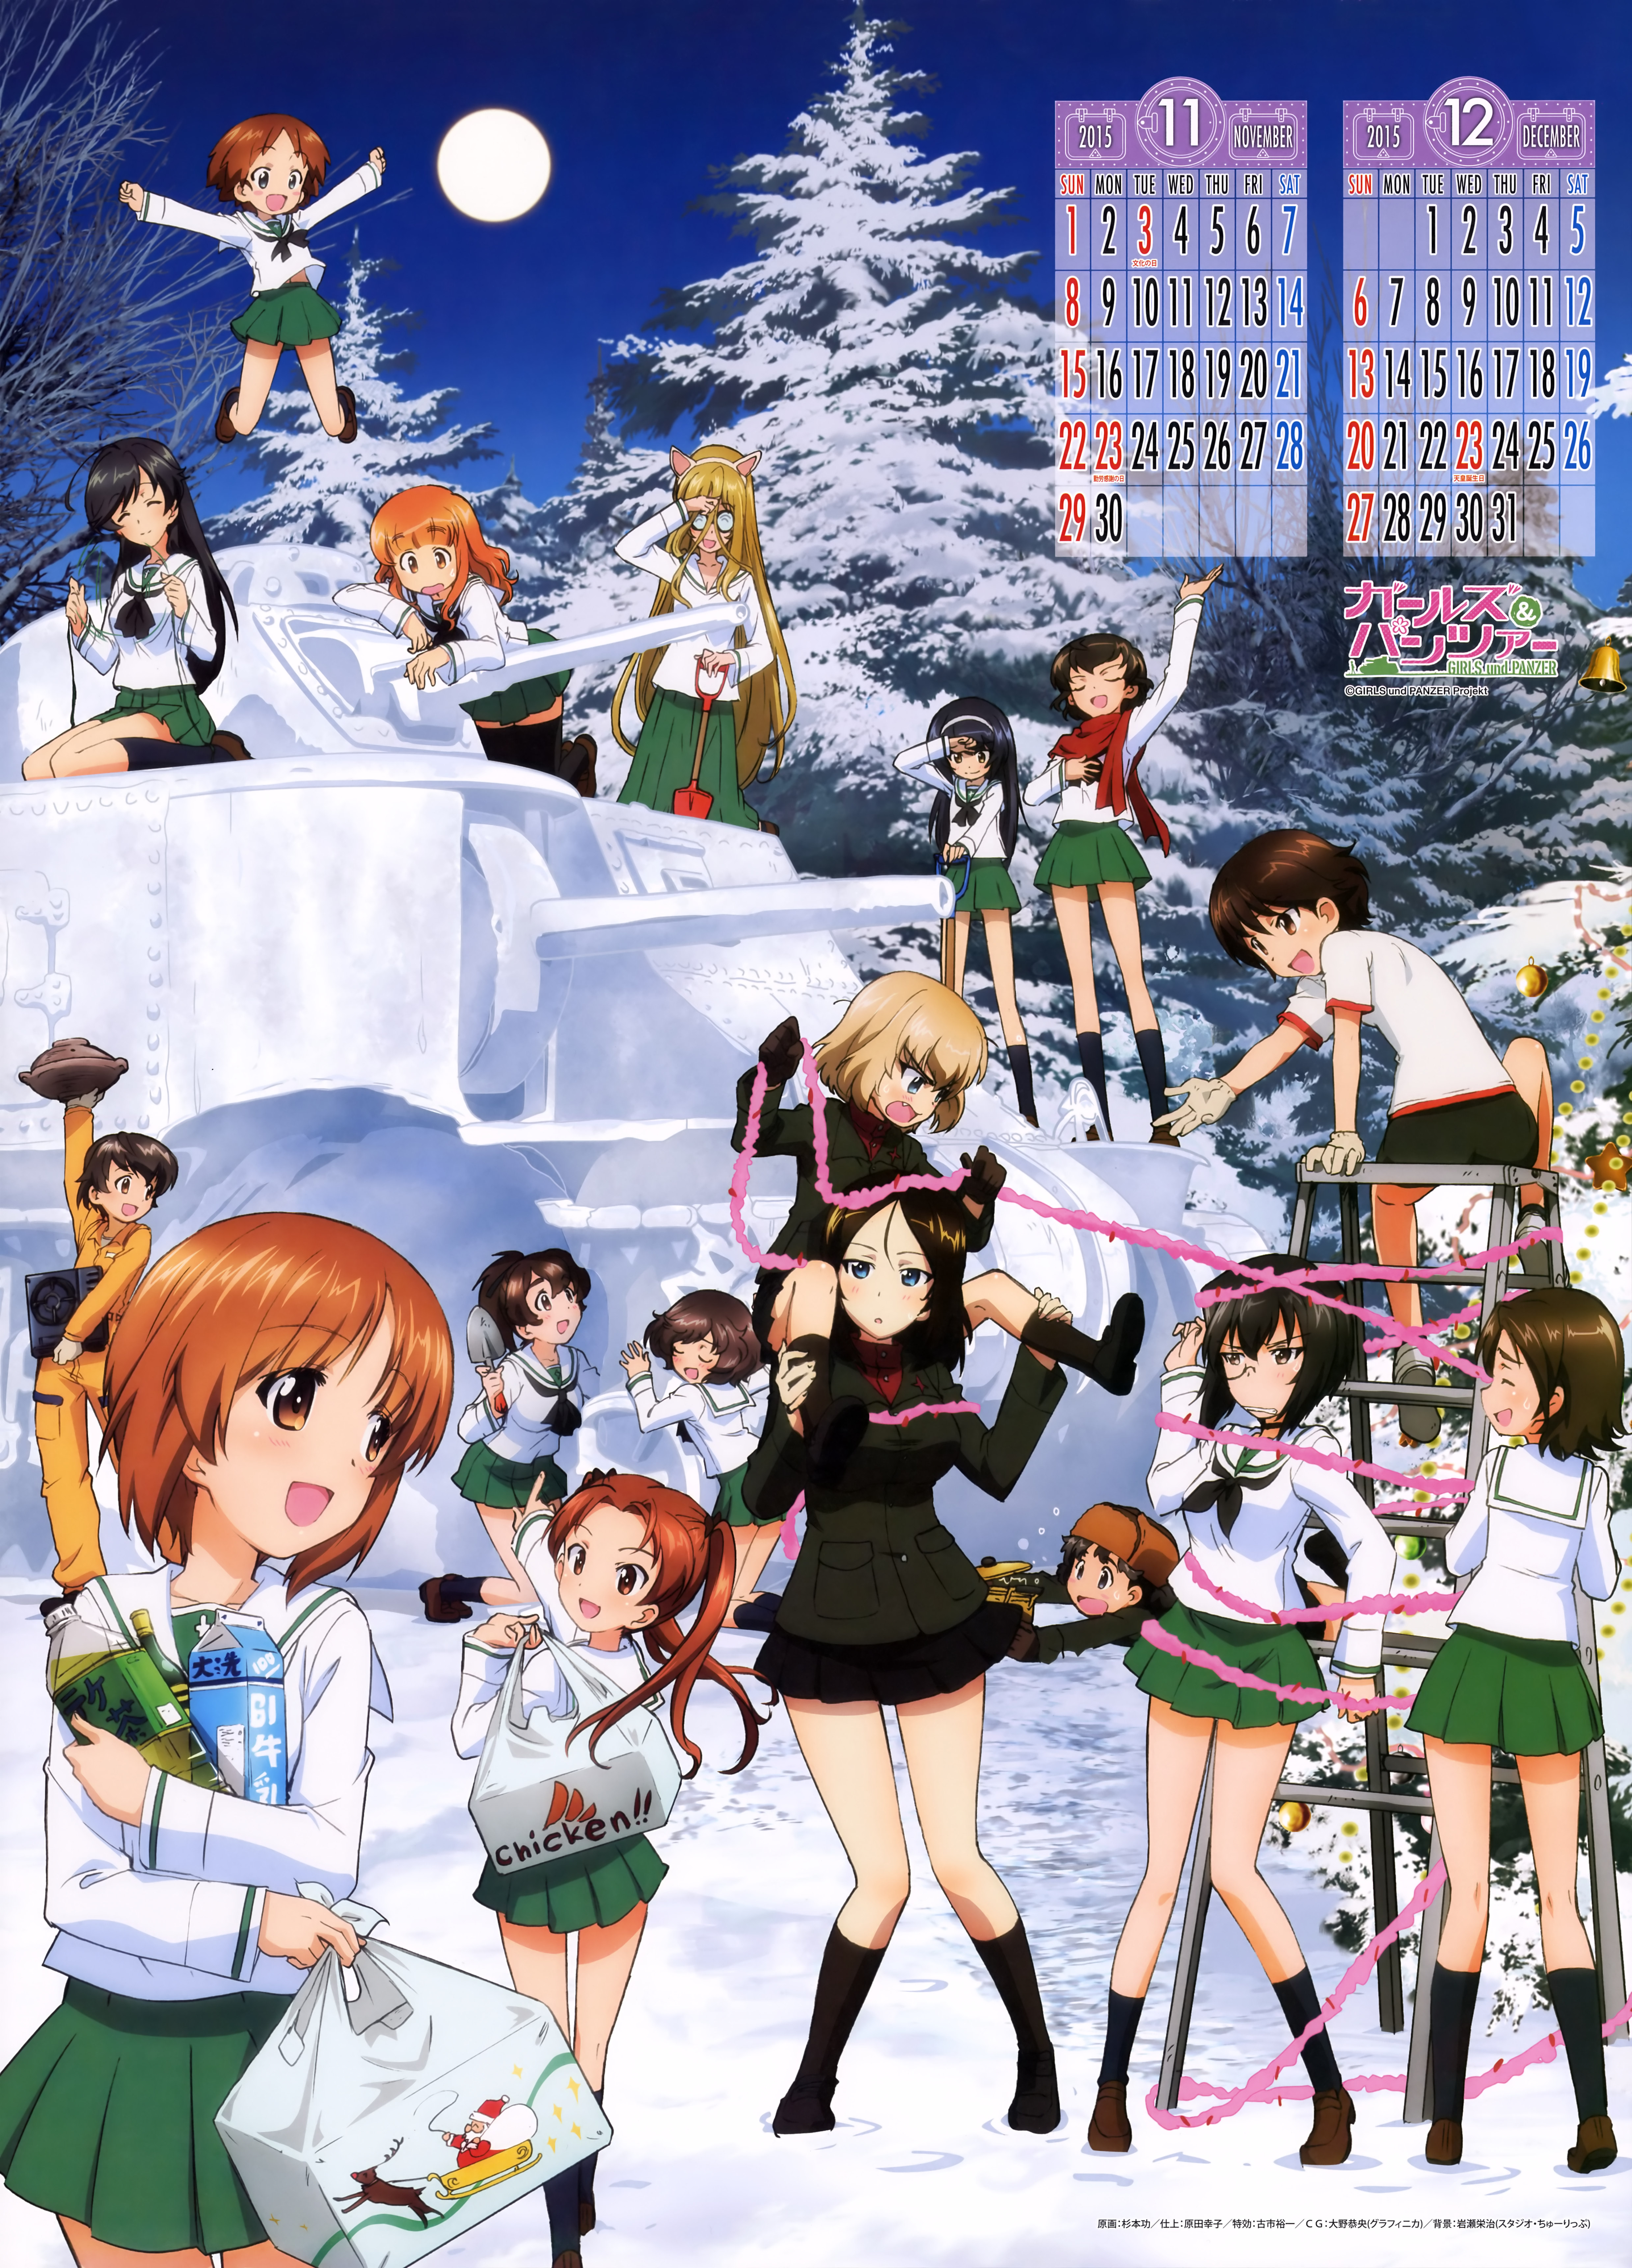 Girls und Panzer 2015 Calendar Previewed Haruhichan.com Gurapan calendar 7